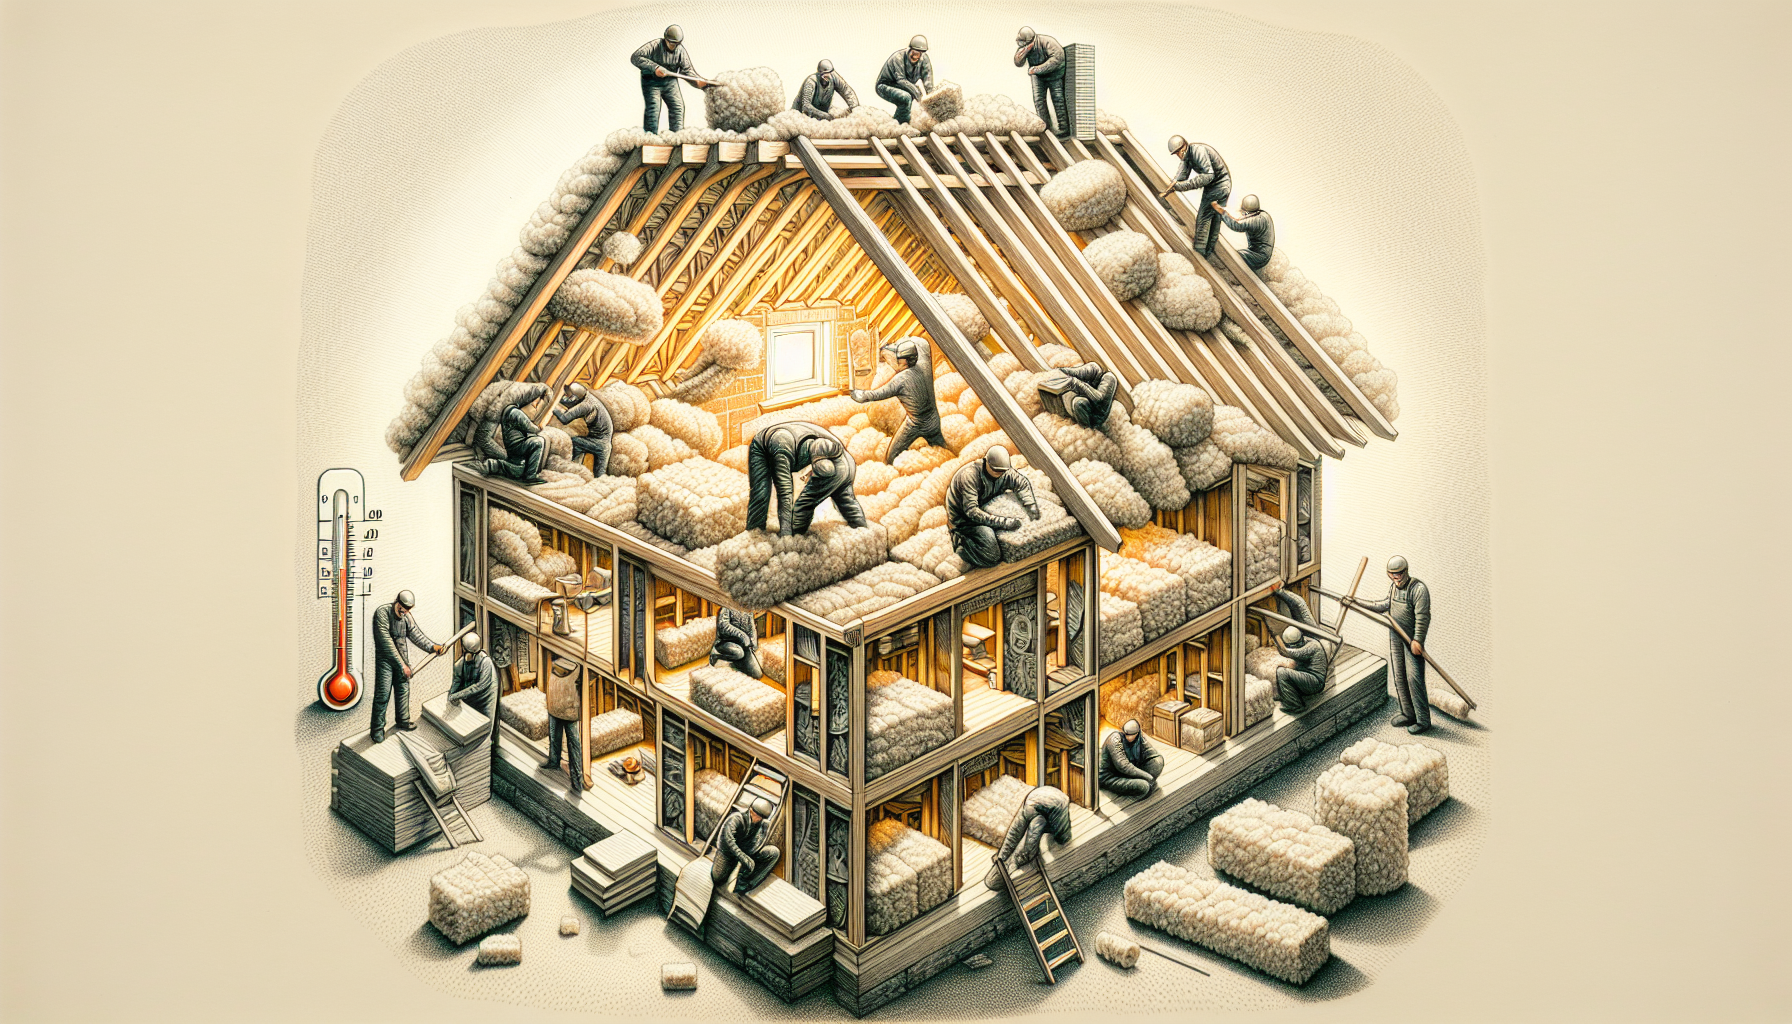 Dämmung als Schlüsselelement im Dachinnenausbau